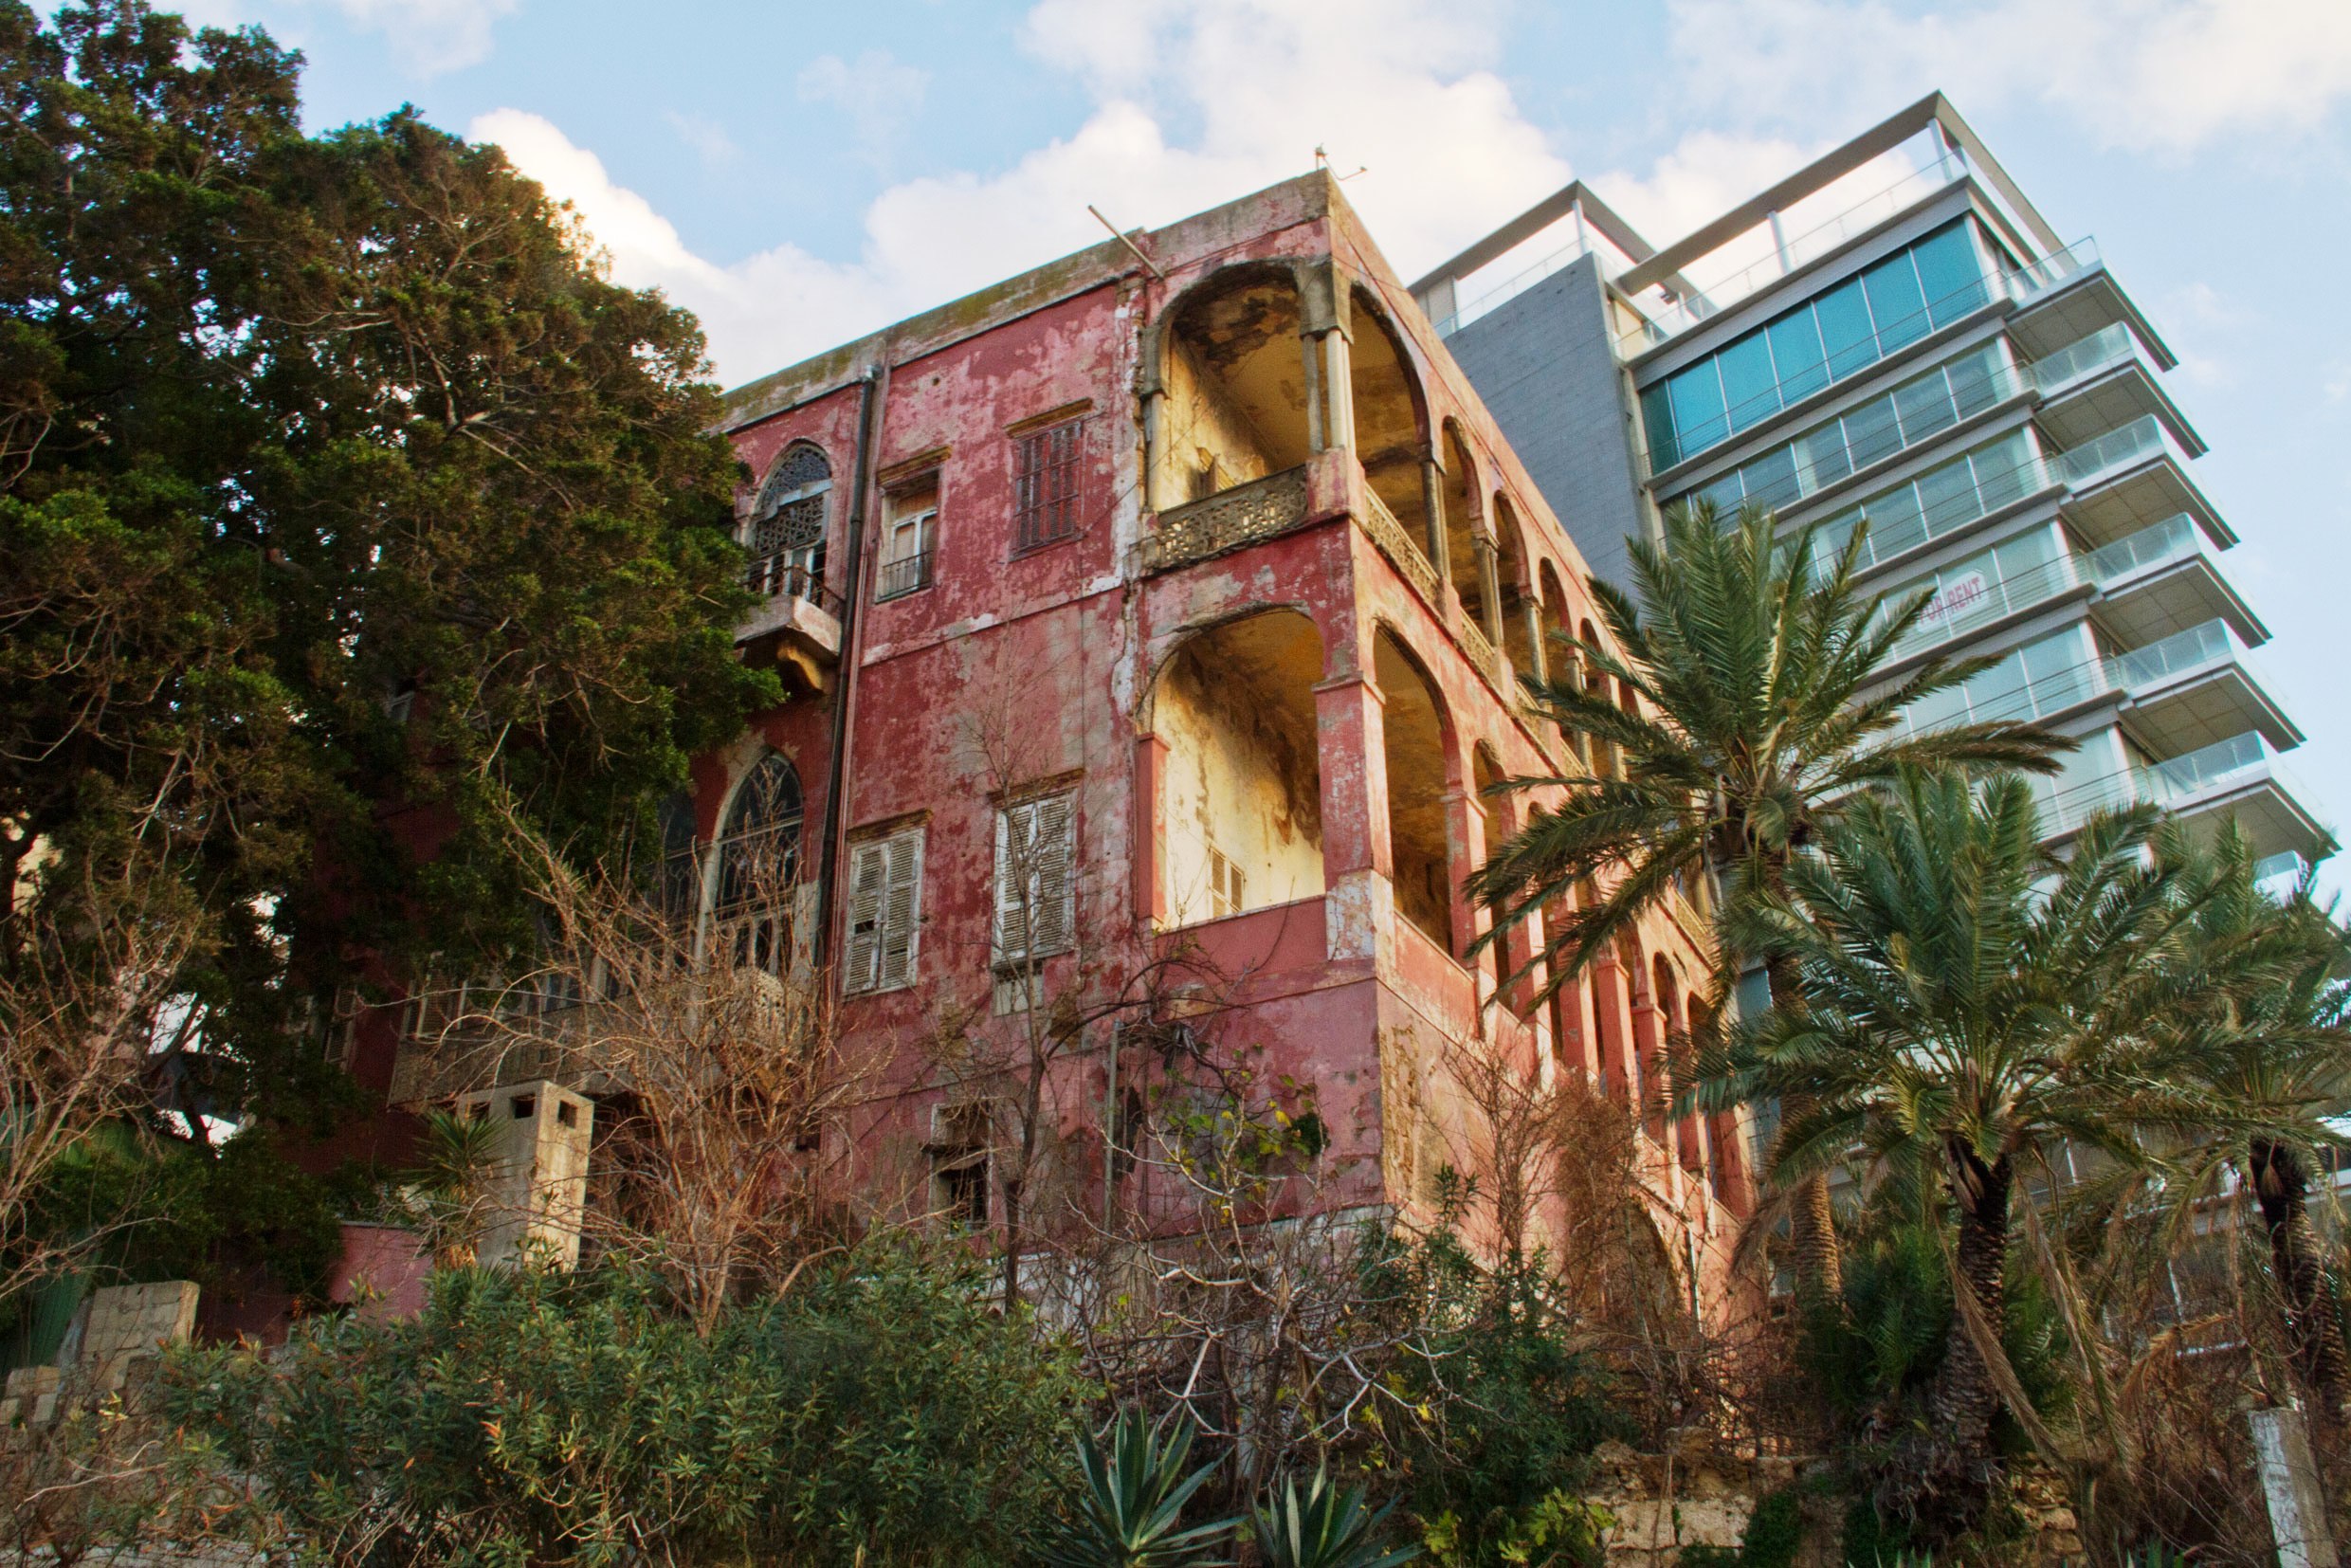 Beirut's nineteenth century Rose House (photo: Changiz M. Varzi)